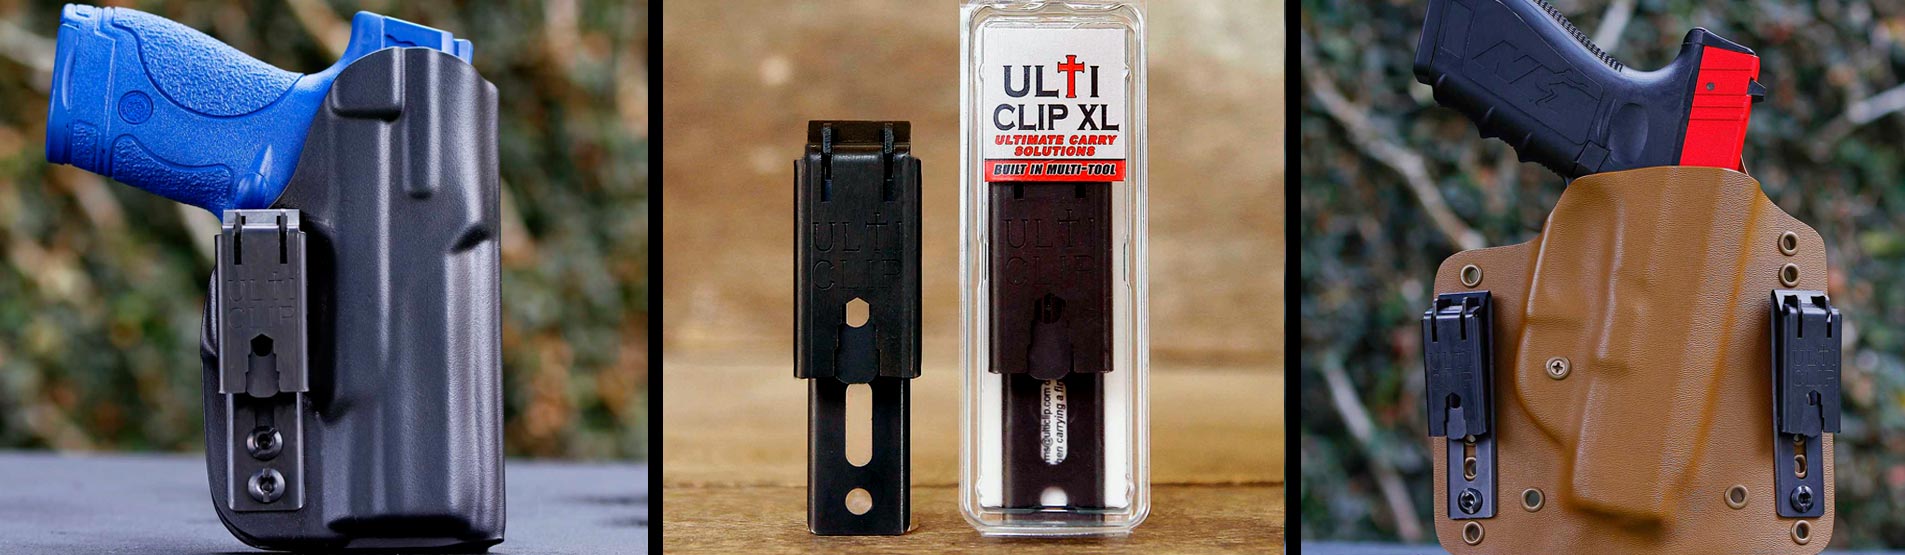 Ulticlip XL - UltiClip